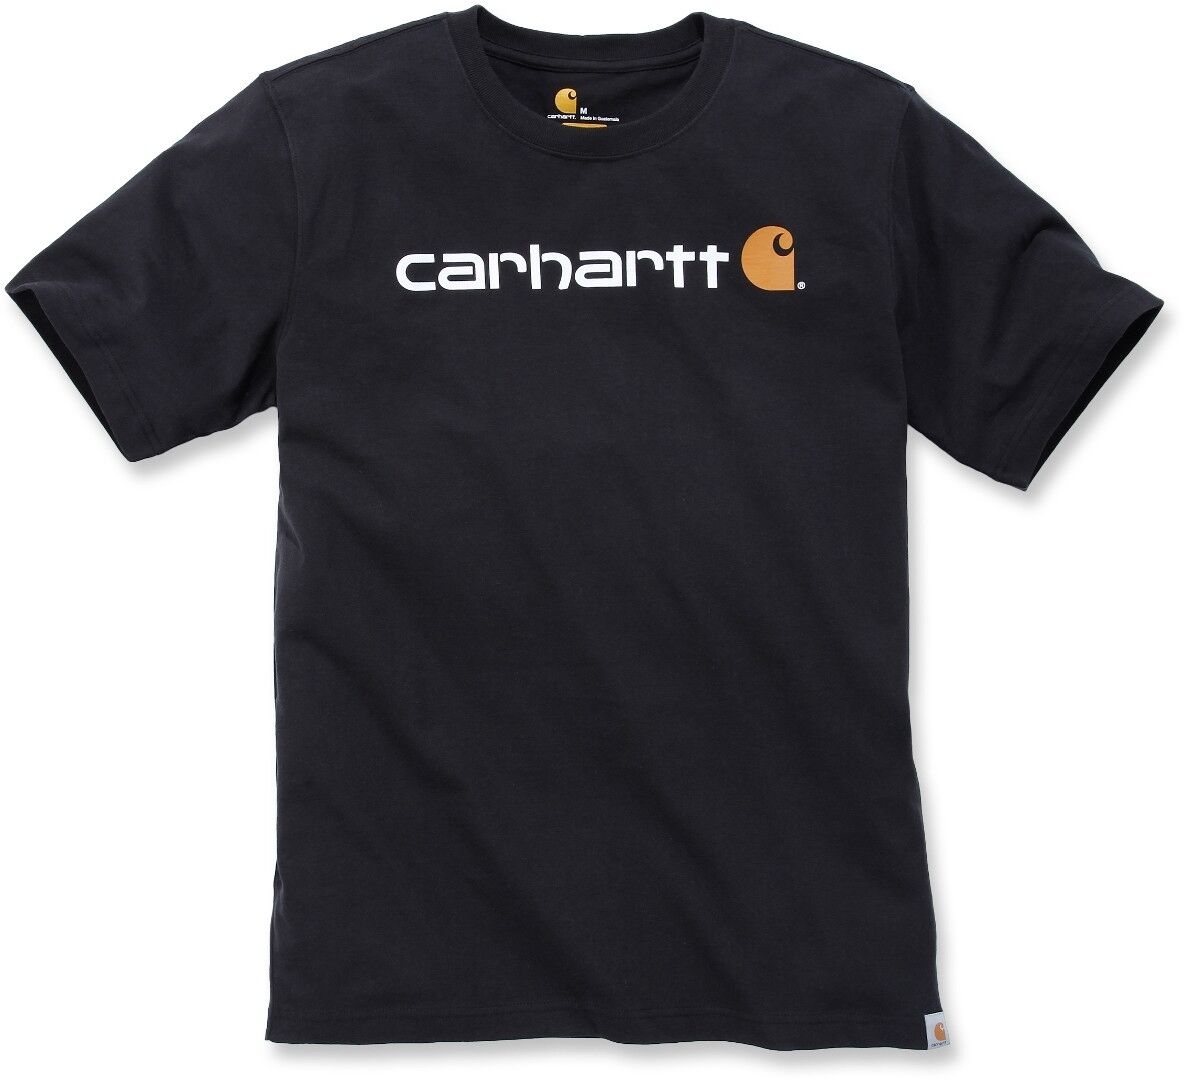 Carhartt EMEA Core Logo Workwear Short Sleeve Camiseta - Negro (XS)